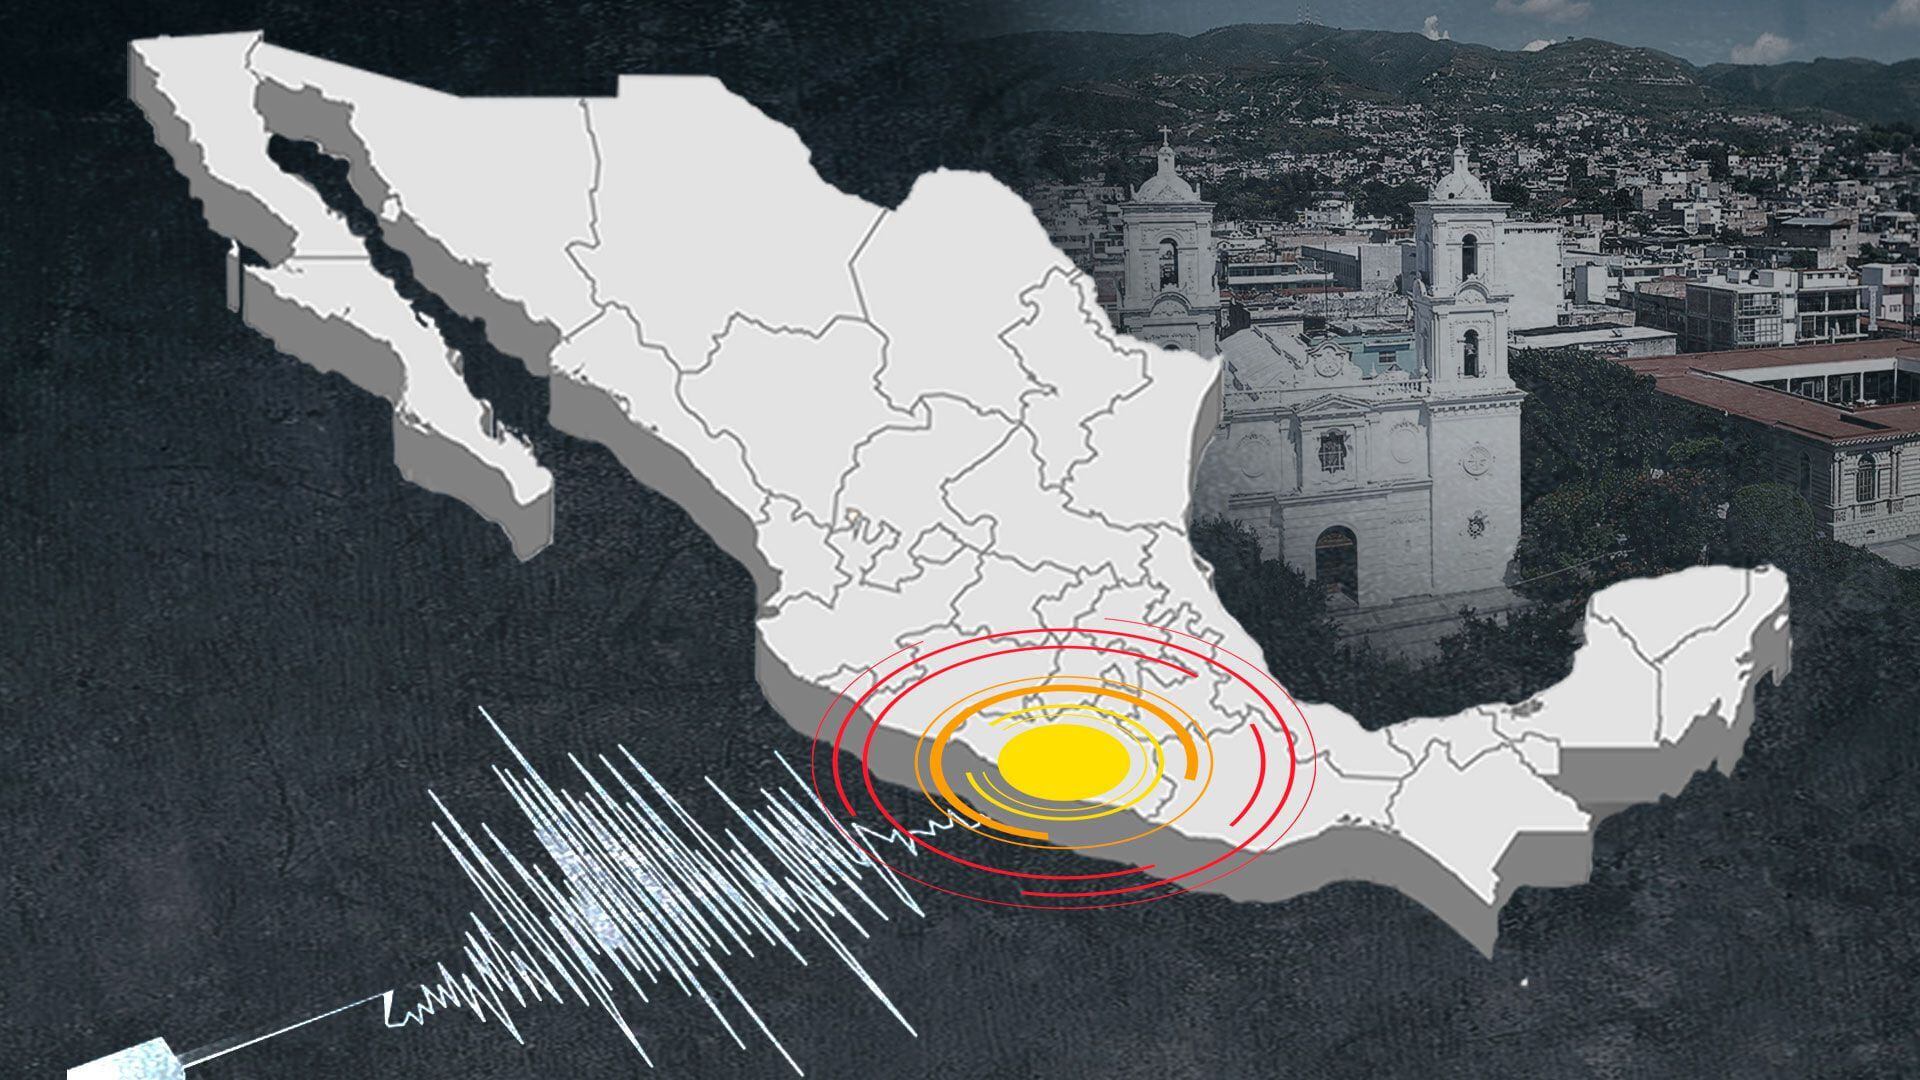 La información preliminar señala que el sismo tuvo epicentro en Crucecita. (Infobae)